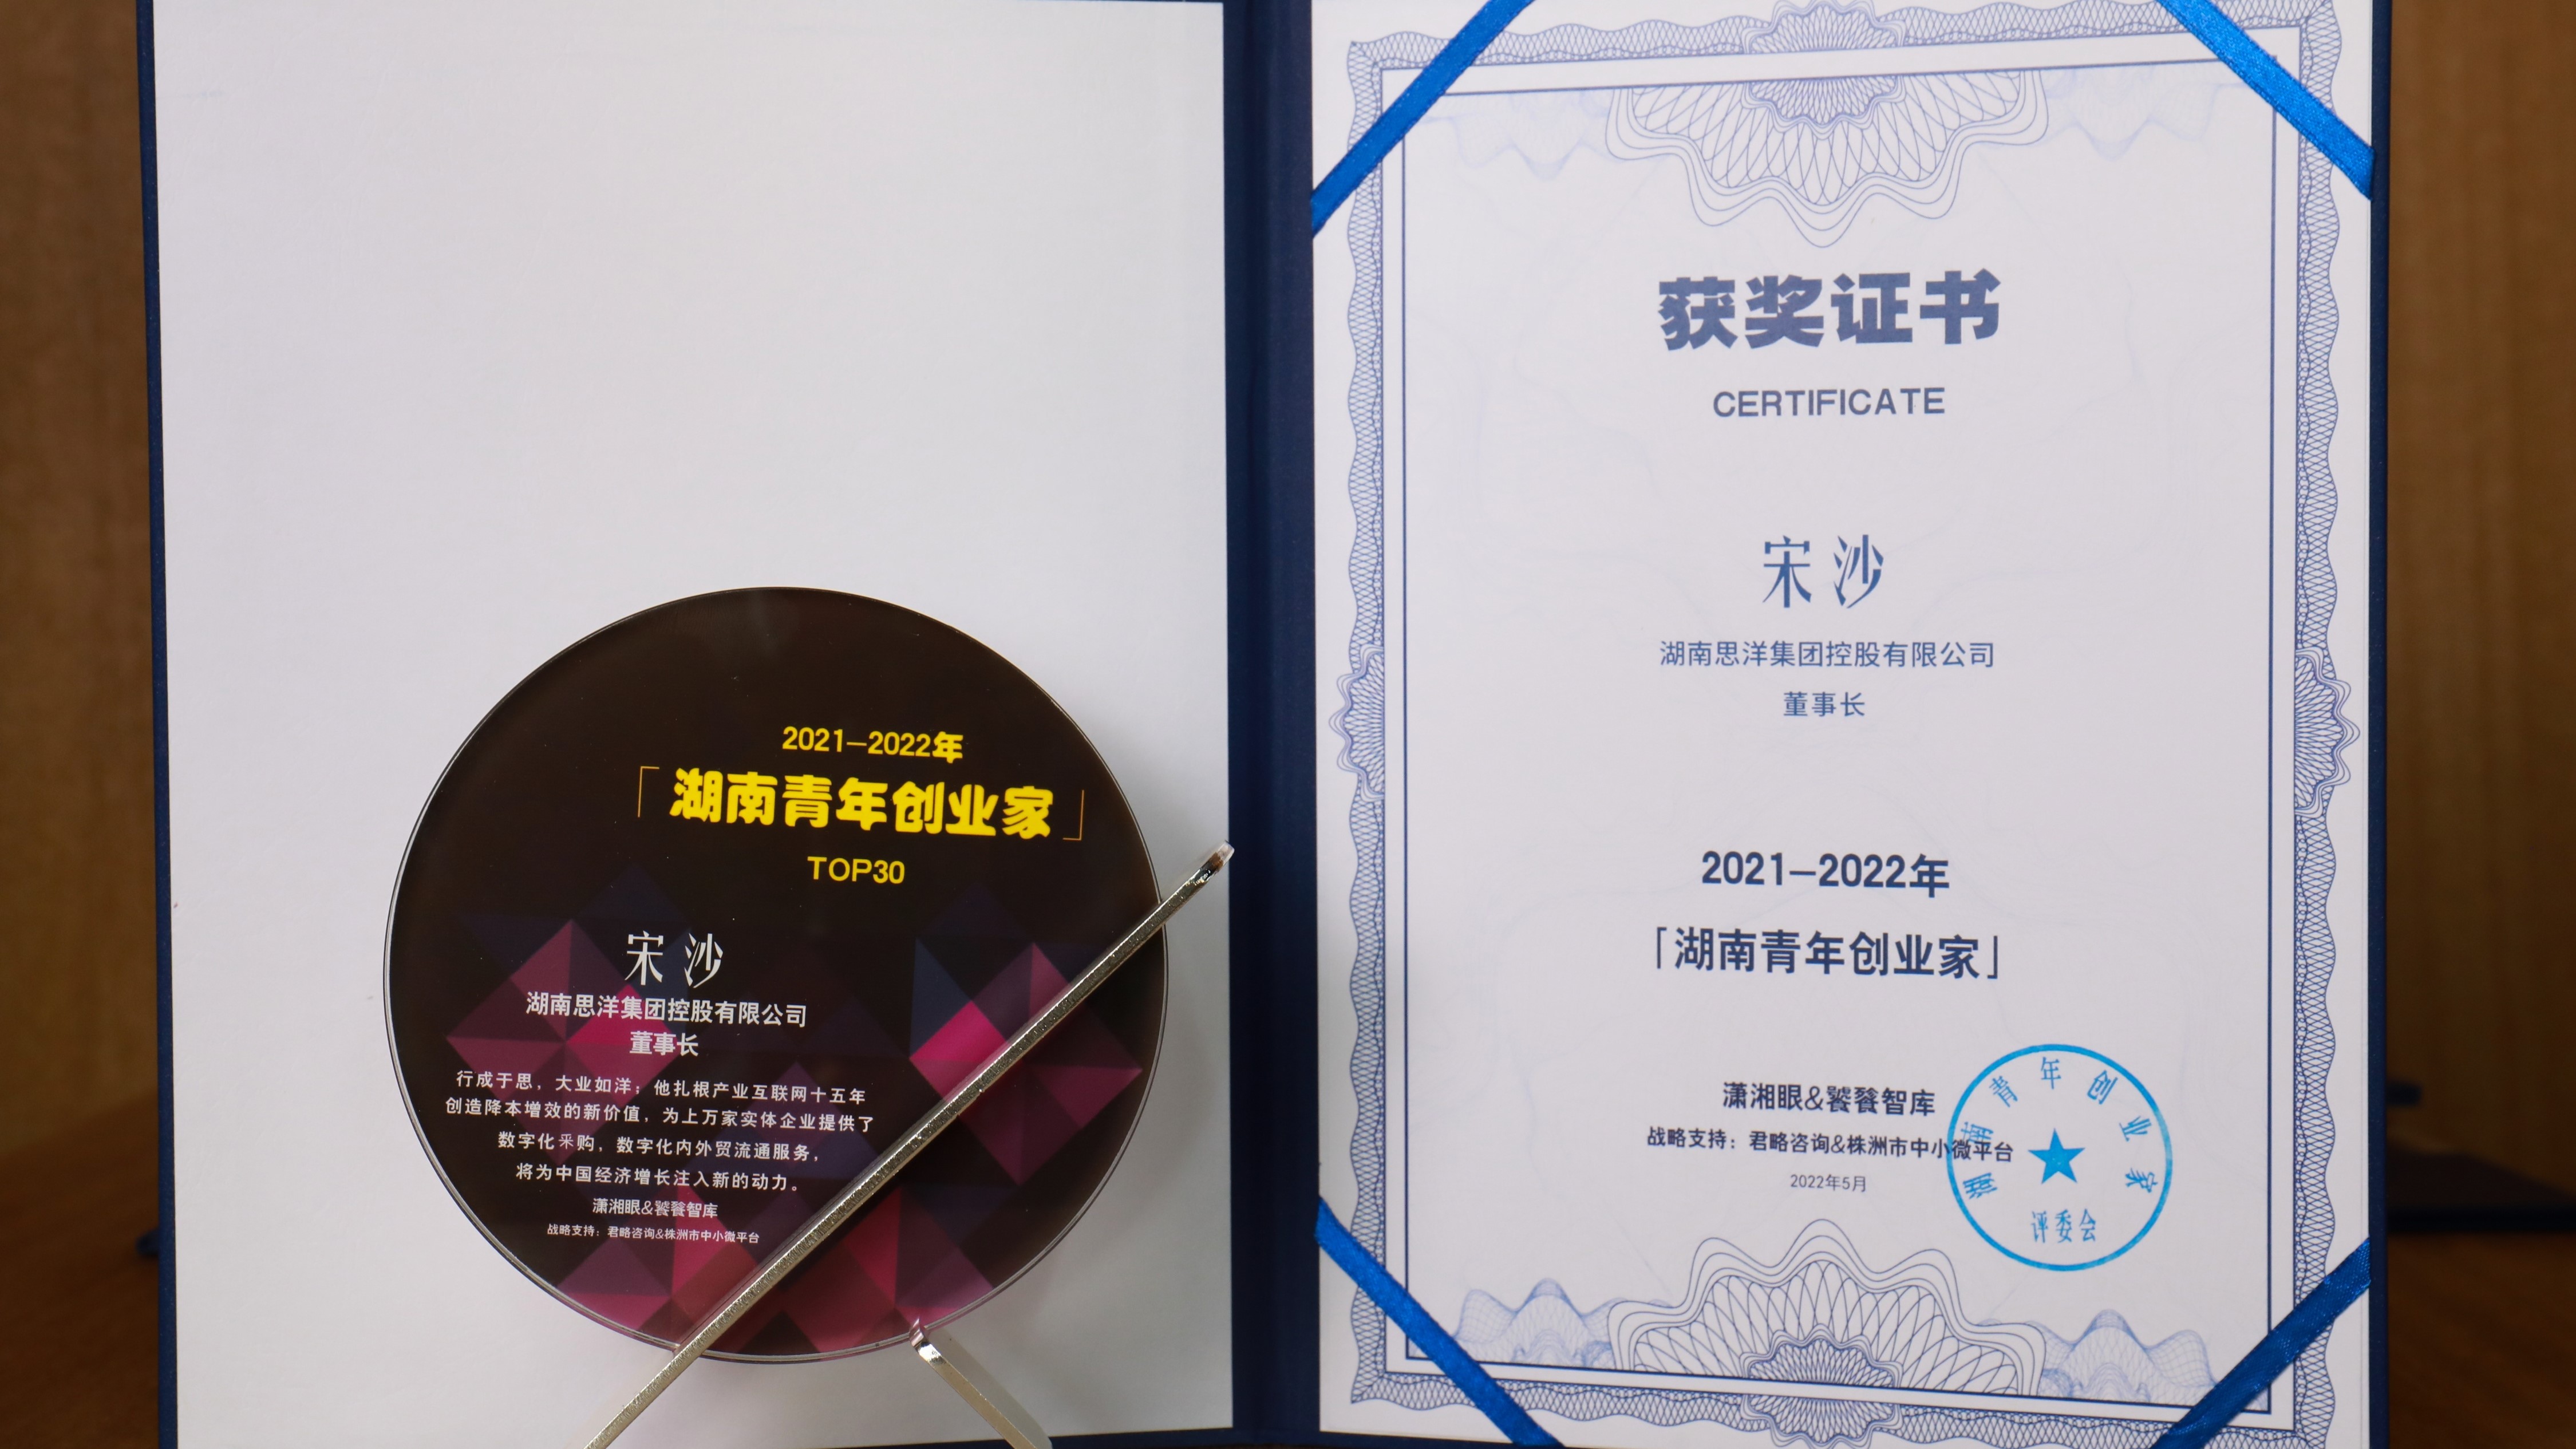 思洋集团宋沙被授予“2021-2022年度湖南青年创业家”奖